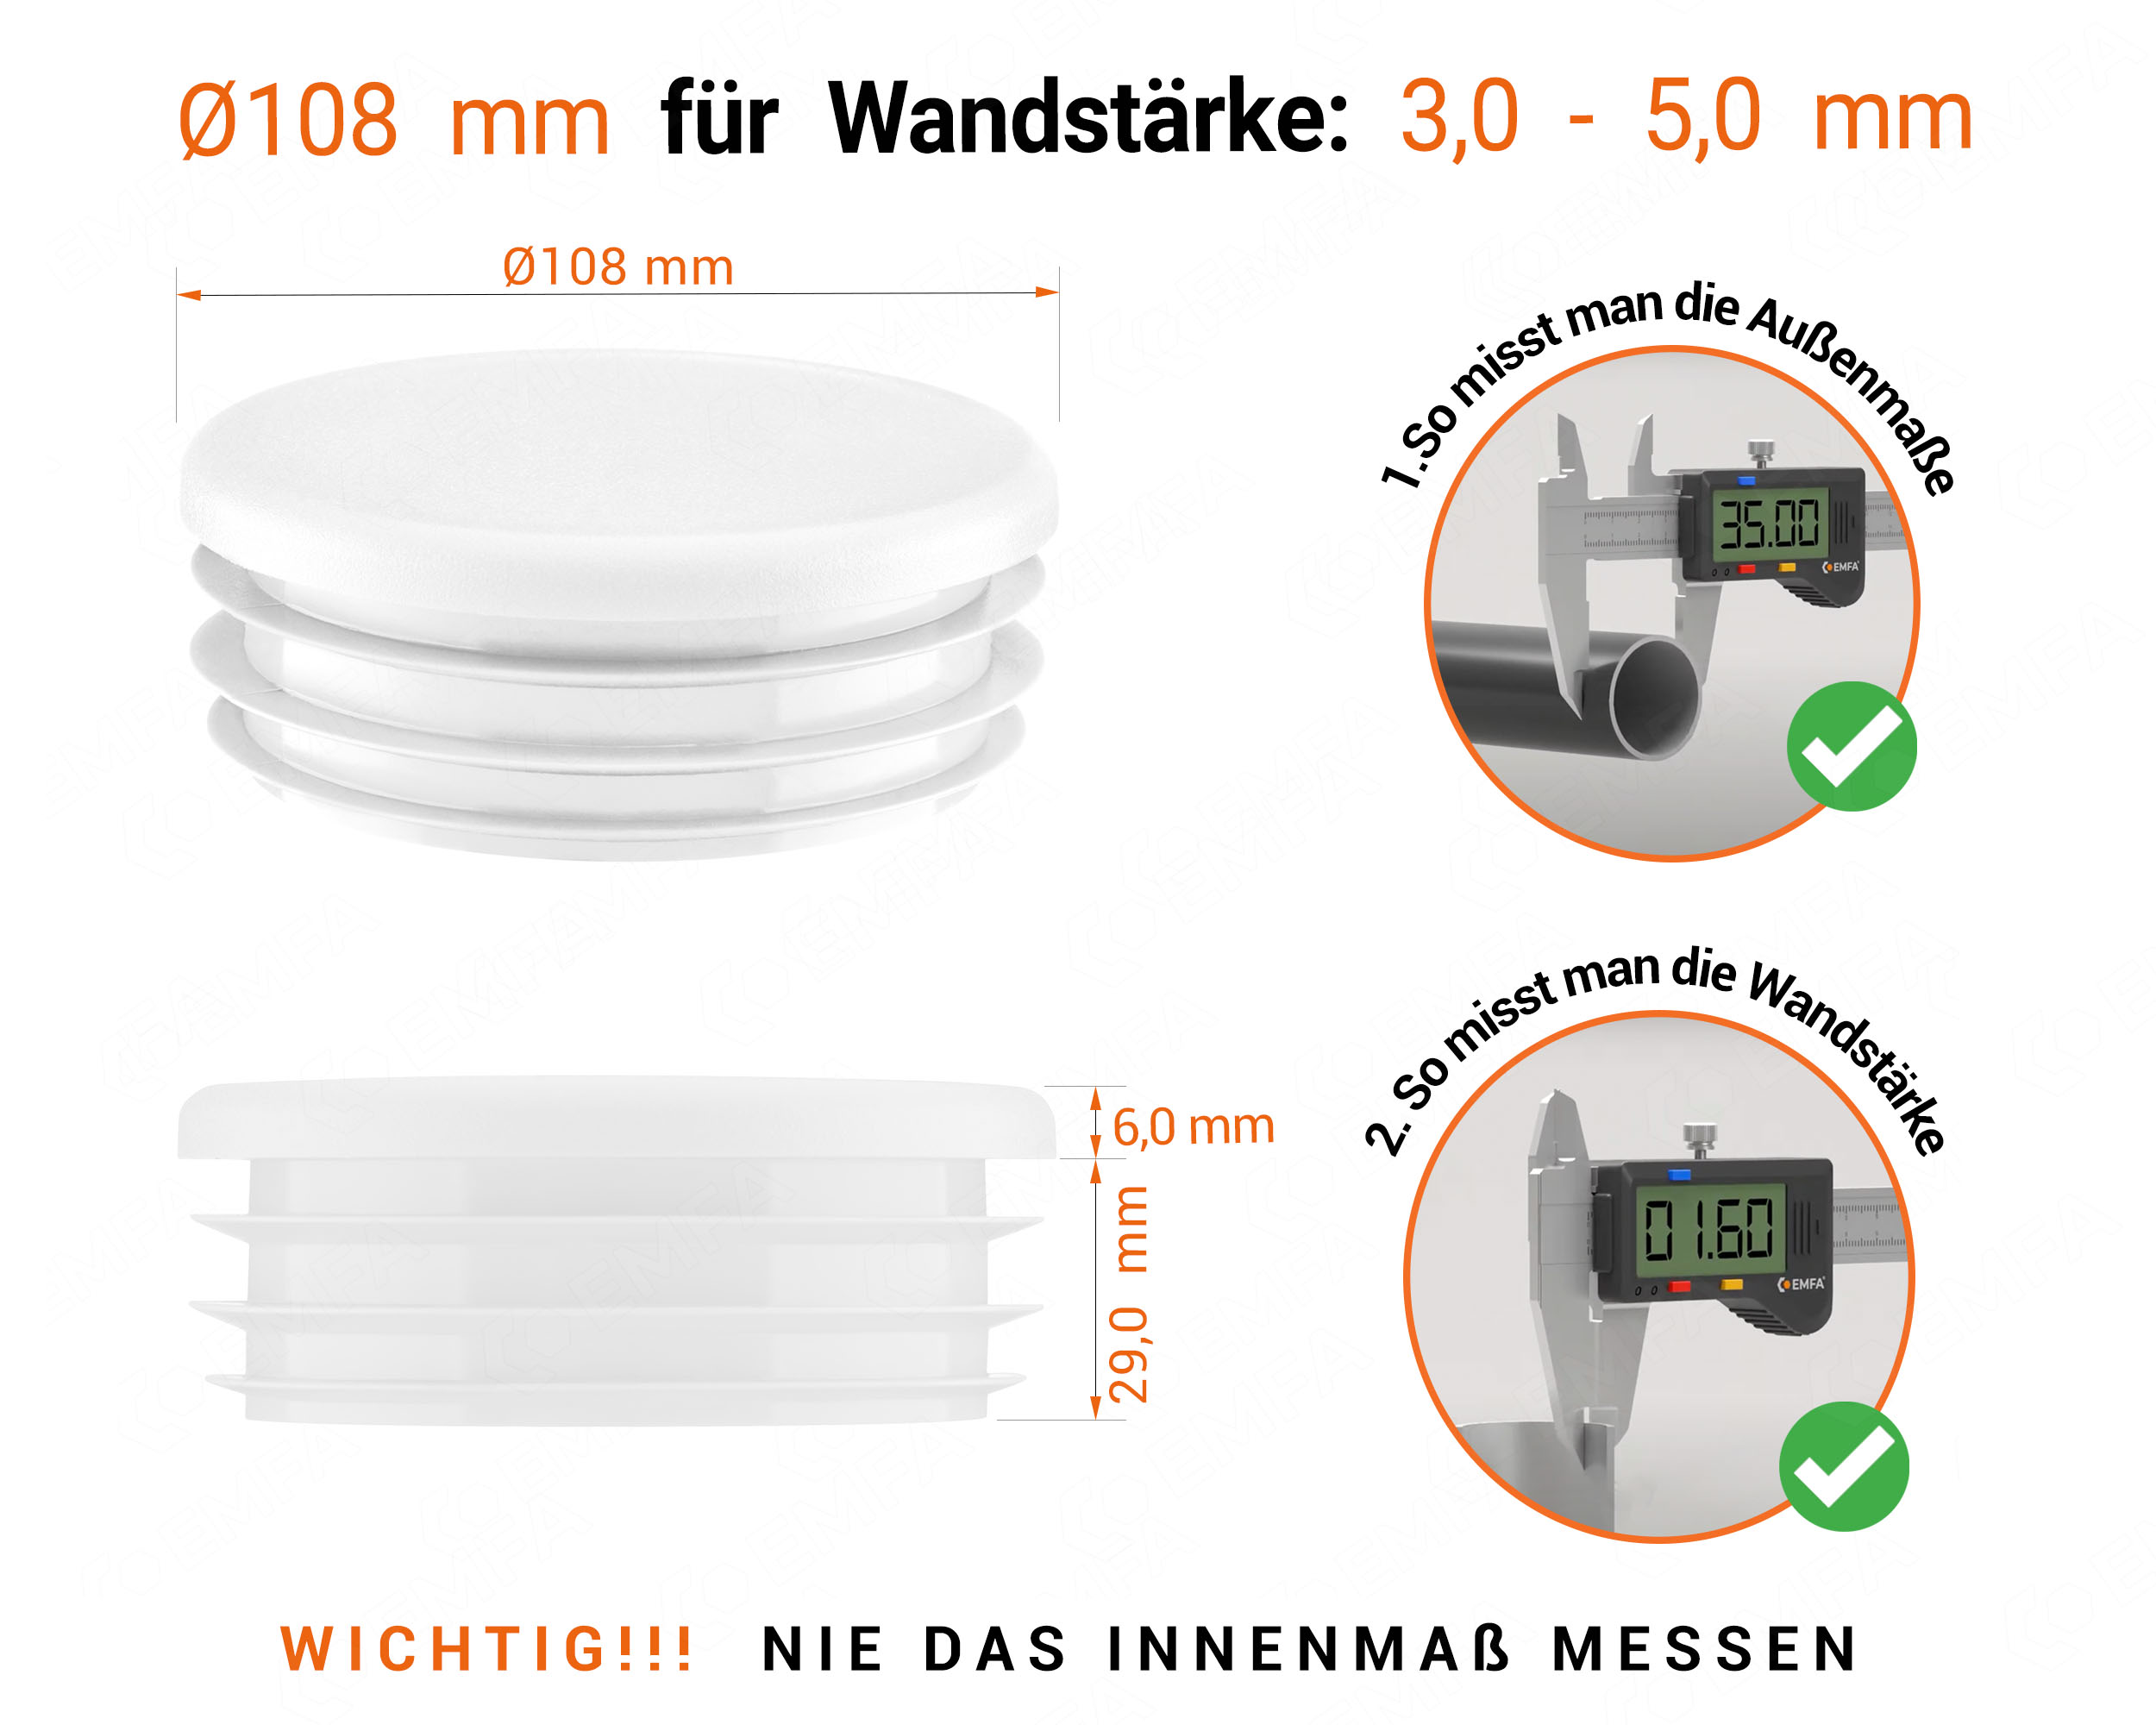 Weiße Endkappe für Rundrohre in der Größe 108 mm mit technischen Abmessungen und Anleitung für korrekte Messung